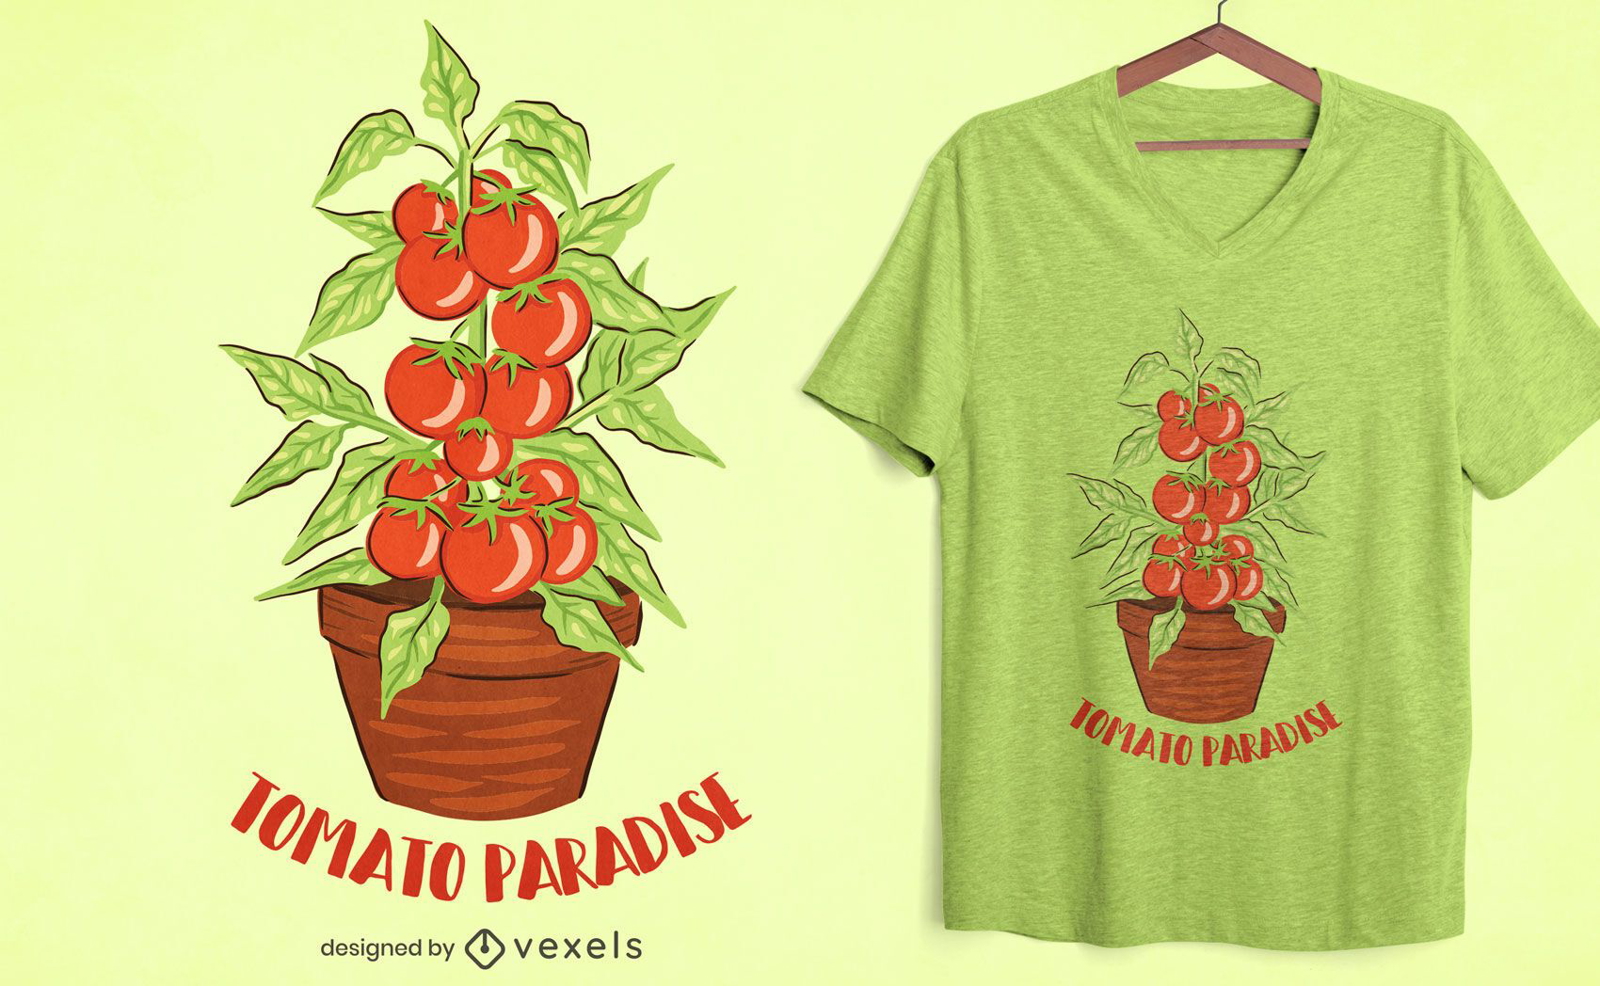 Tomato paradise t-shirt design